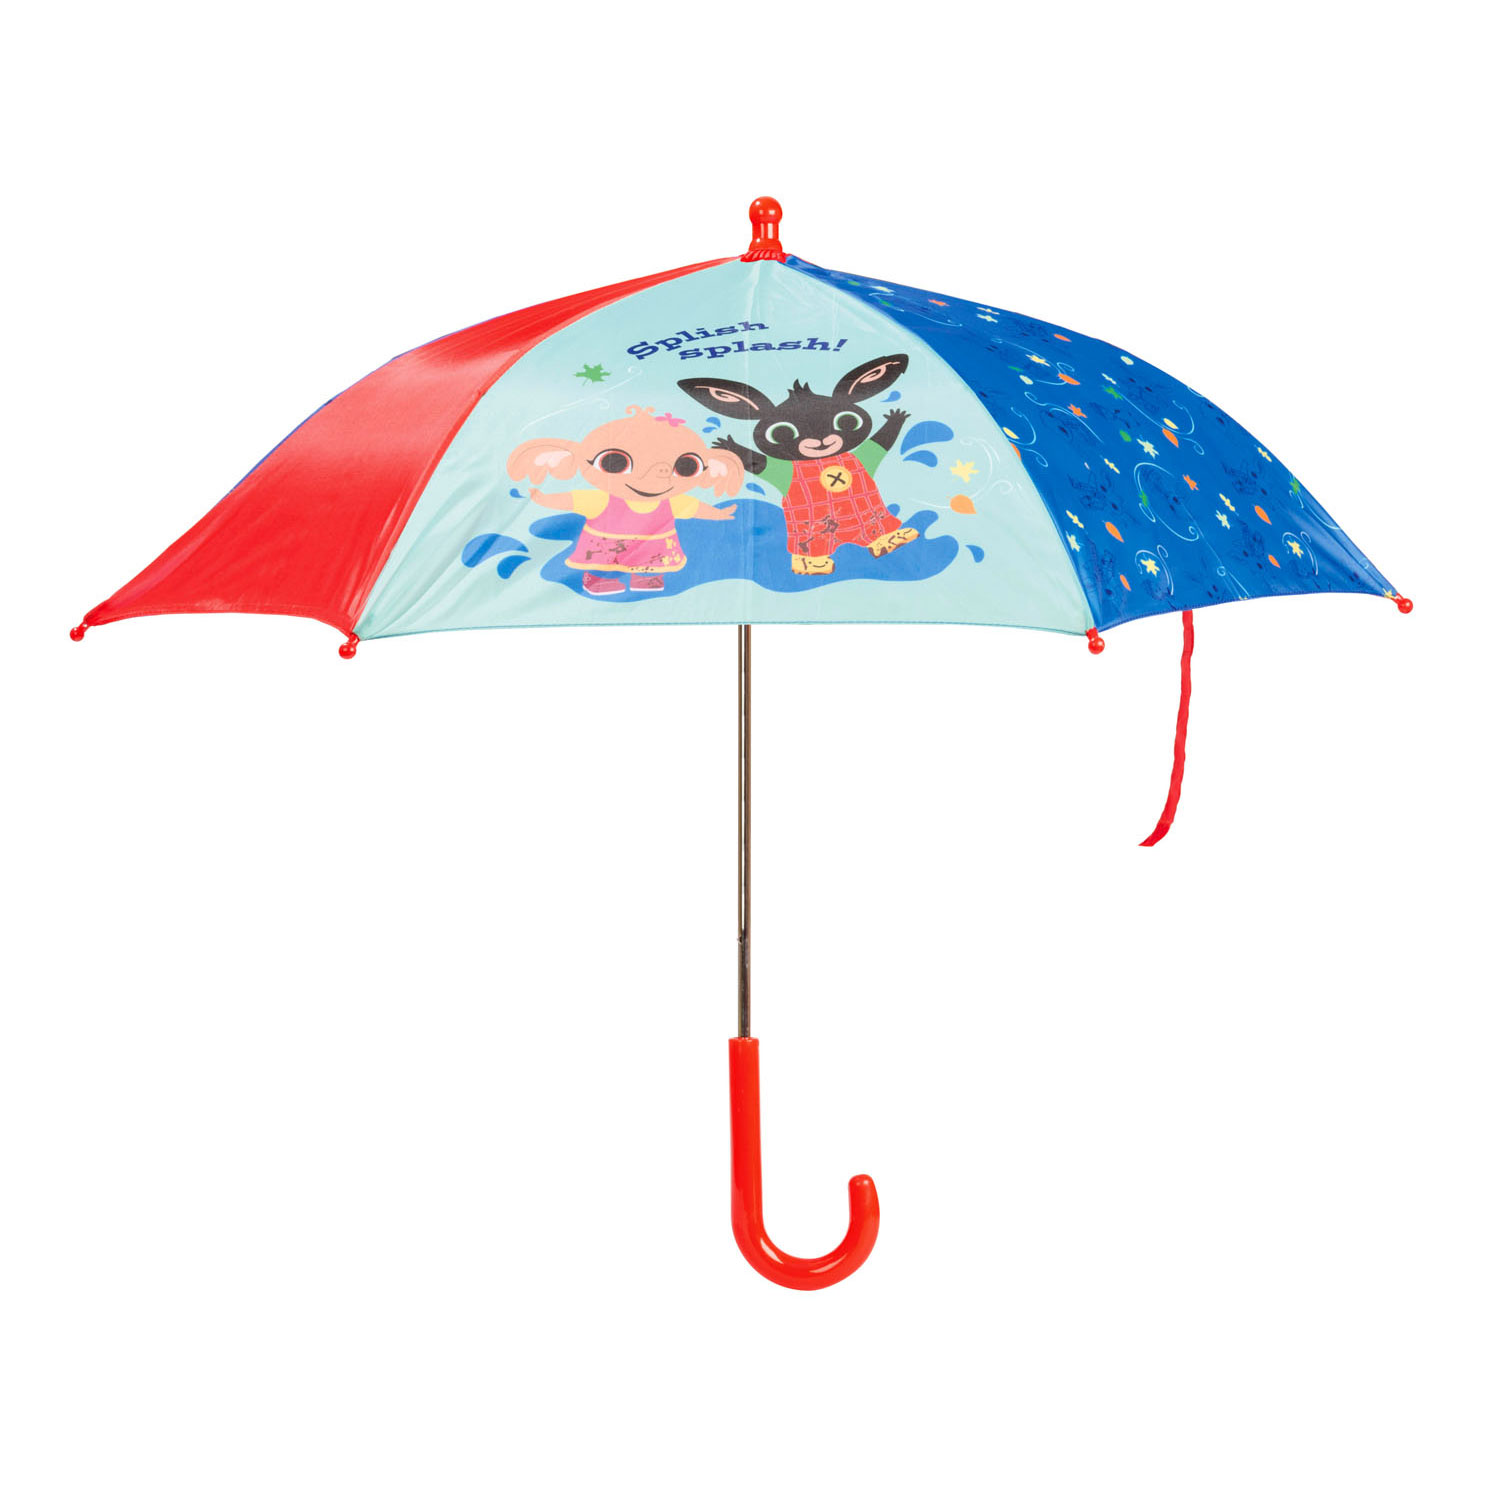 Bing -Regenschirm